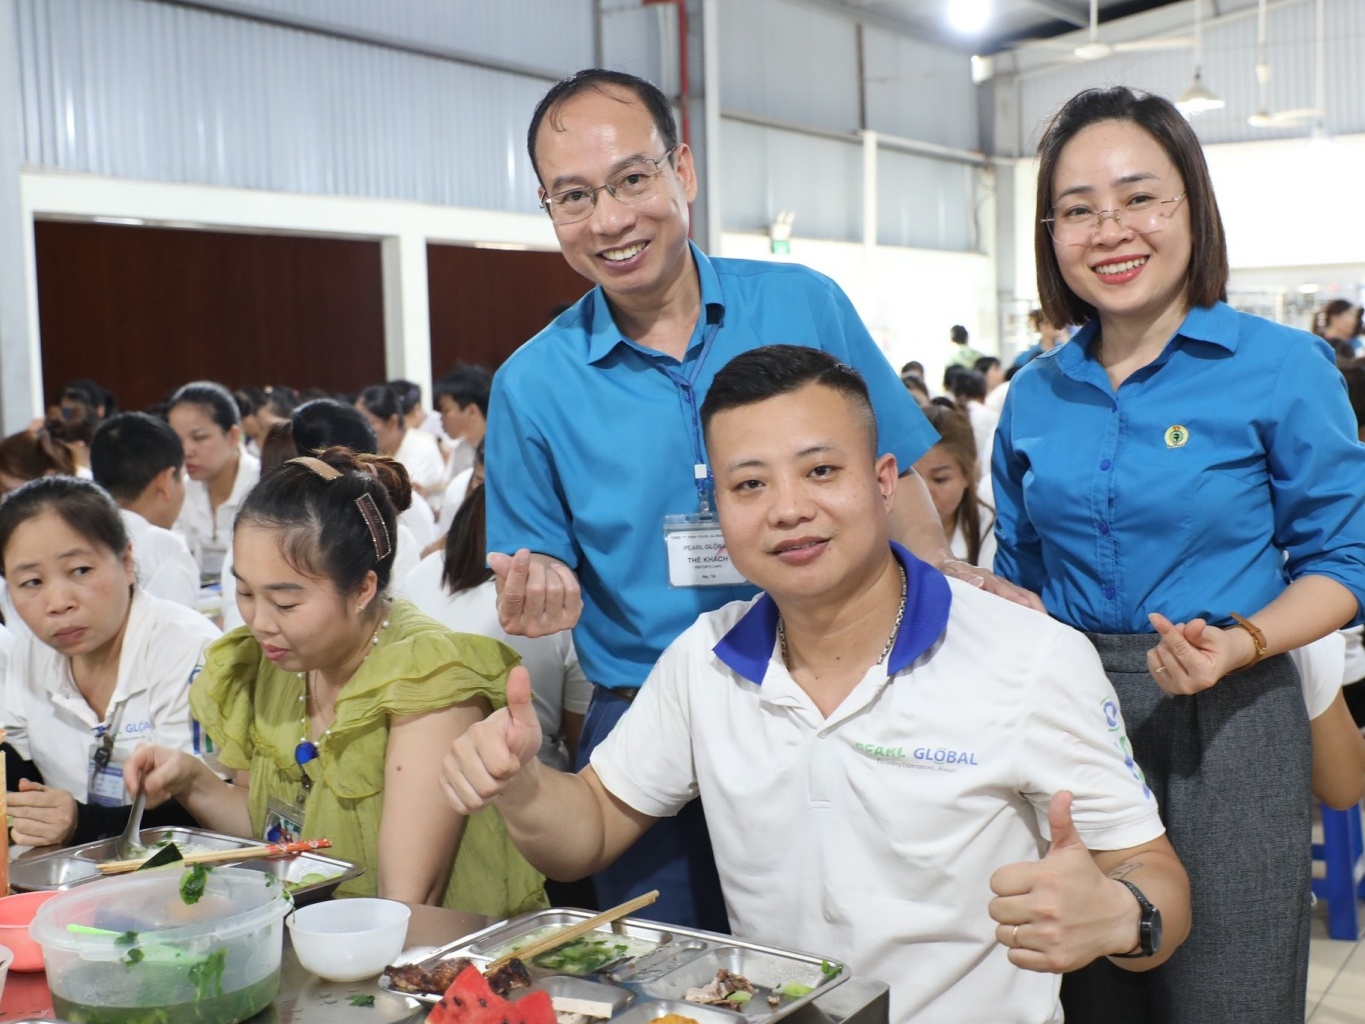 Pearl Global Việt Nam và "Bữa cơm Công đoàn - Cảm ơn người lao động"